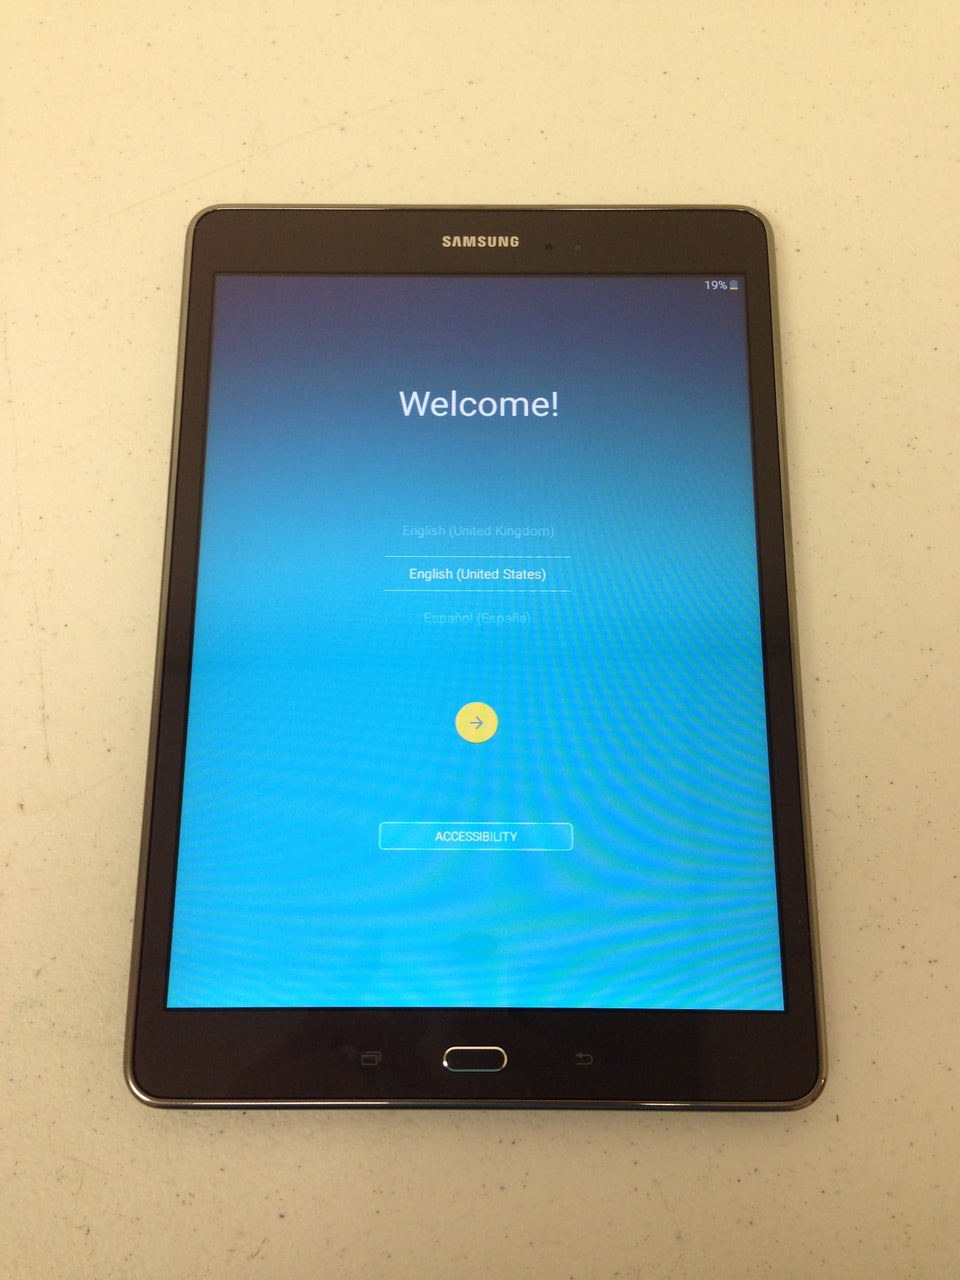 Galaxy Tab A: Wi-Fi 16GB 9.7 Tablet - SM-T550NZAAXAR